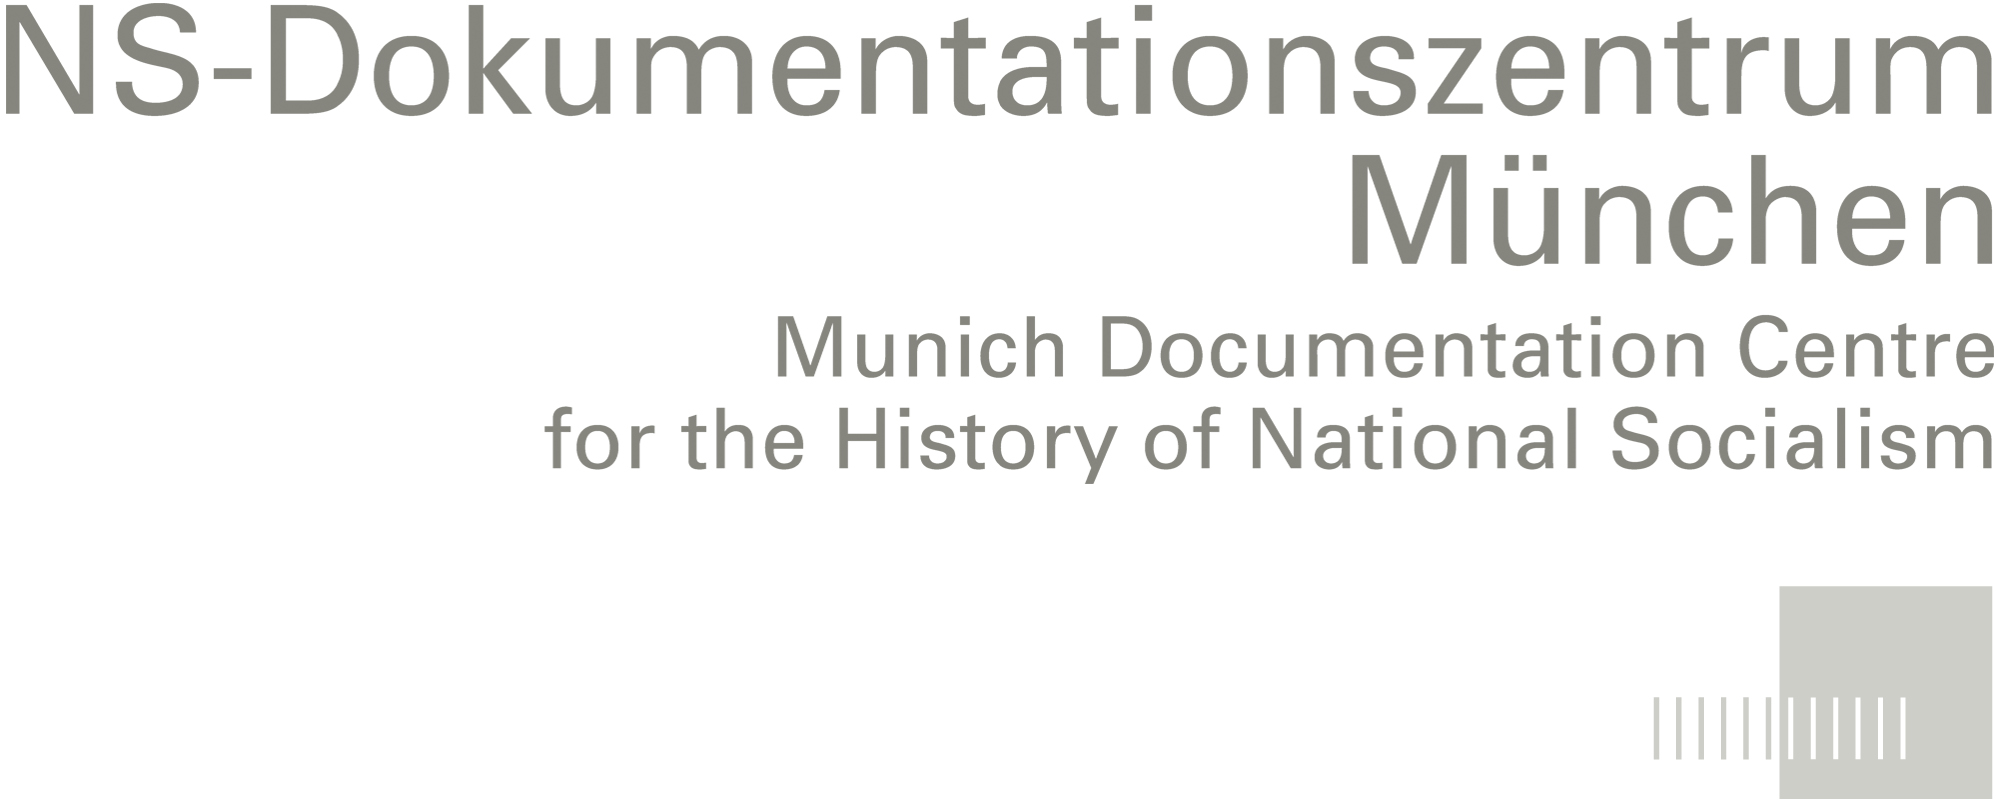 Logo NS-Dokumentationszentrum München